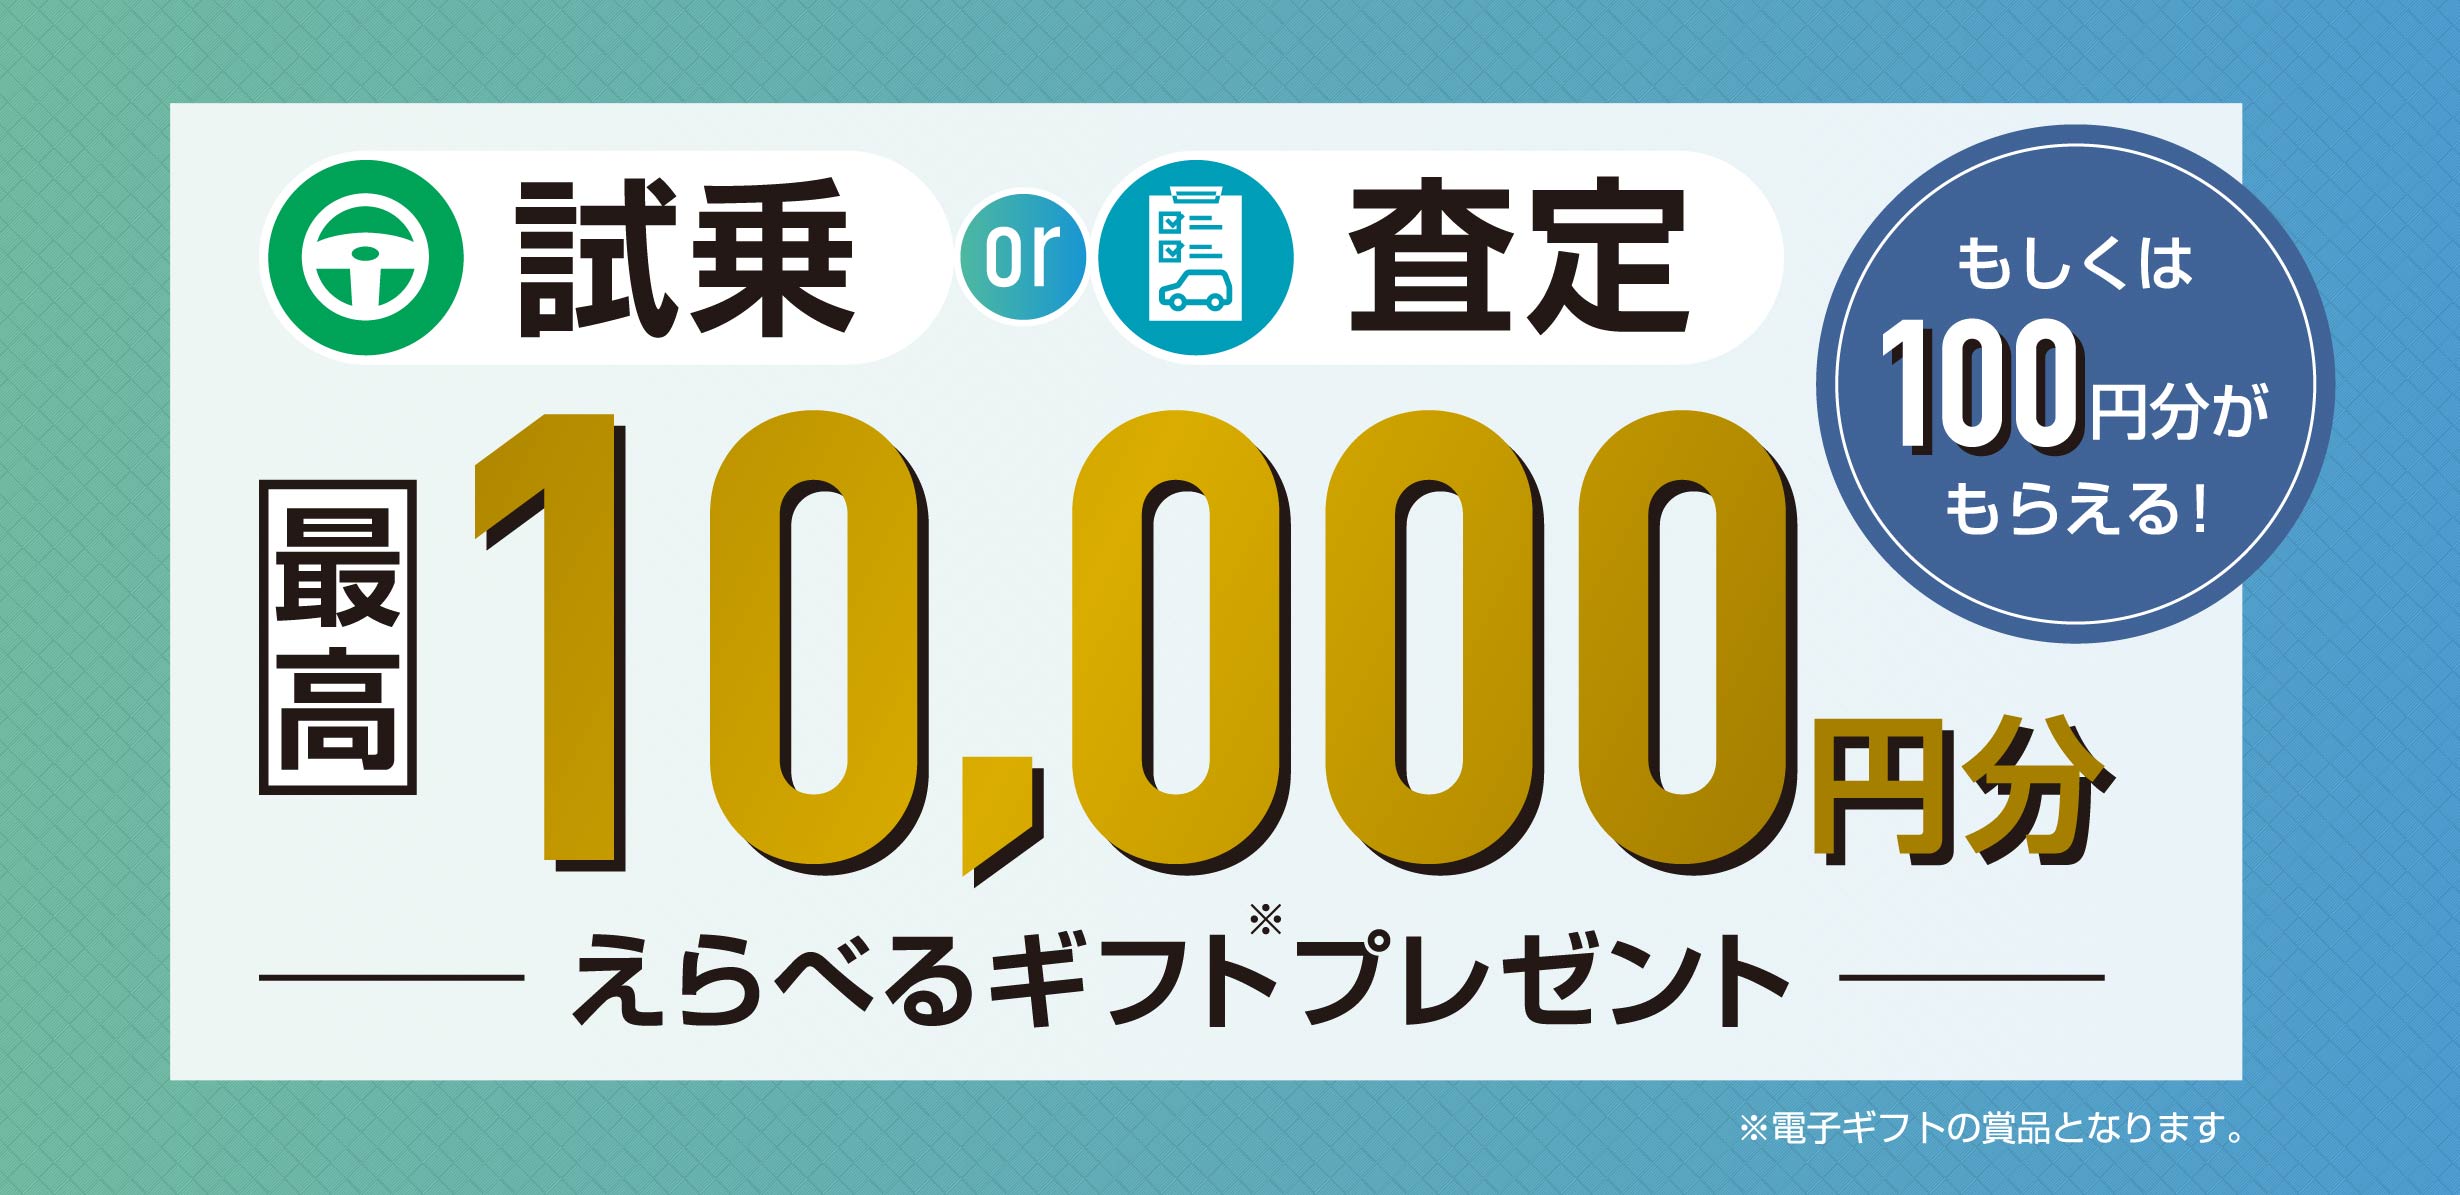 試乗OR査定 最高10000円分 えらべるギフトプレゼント